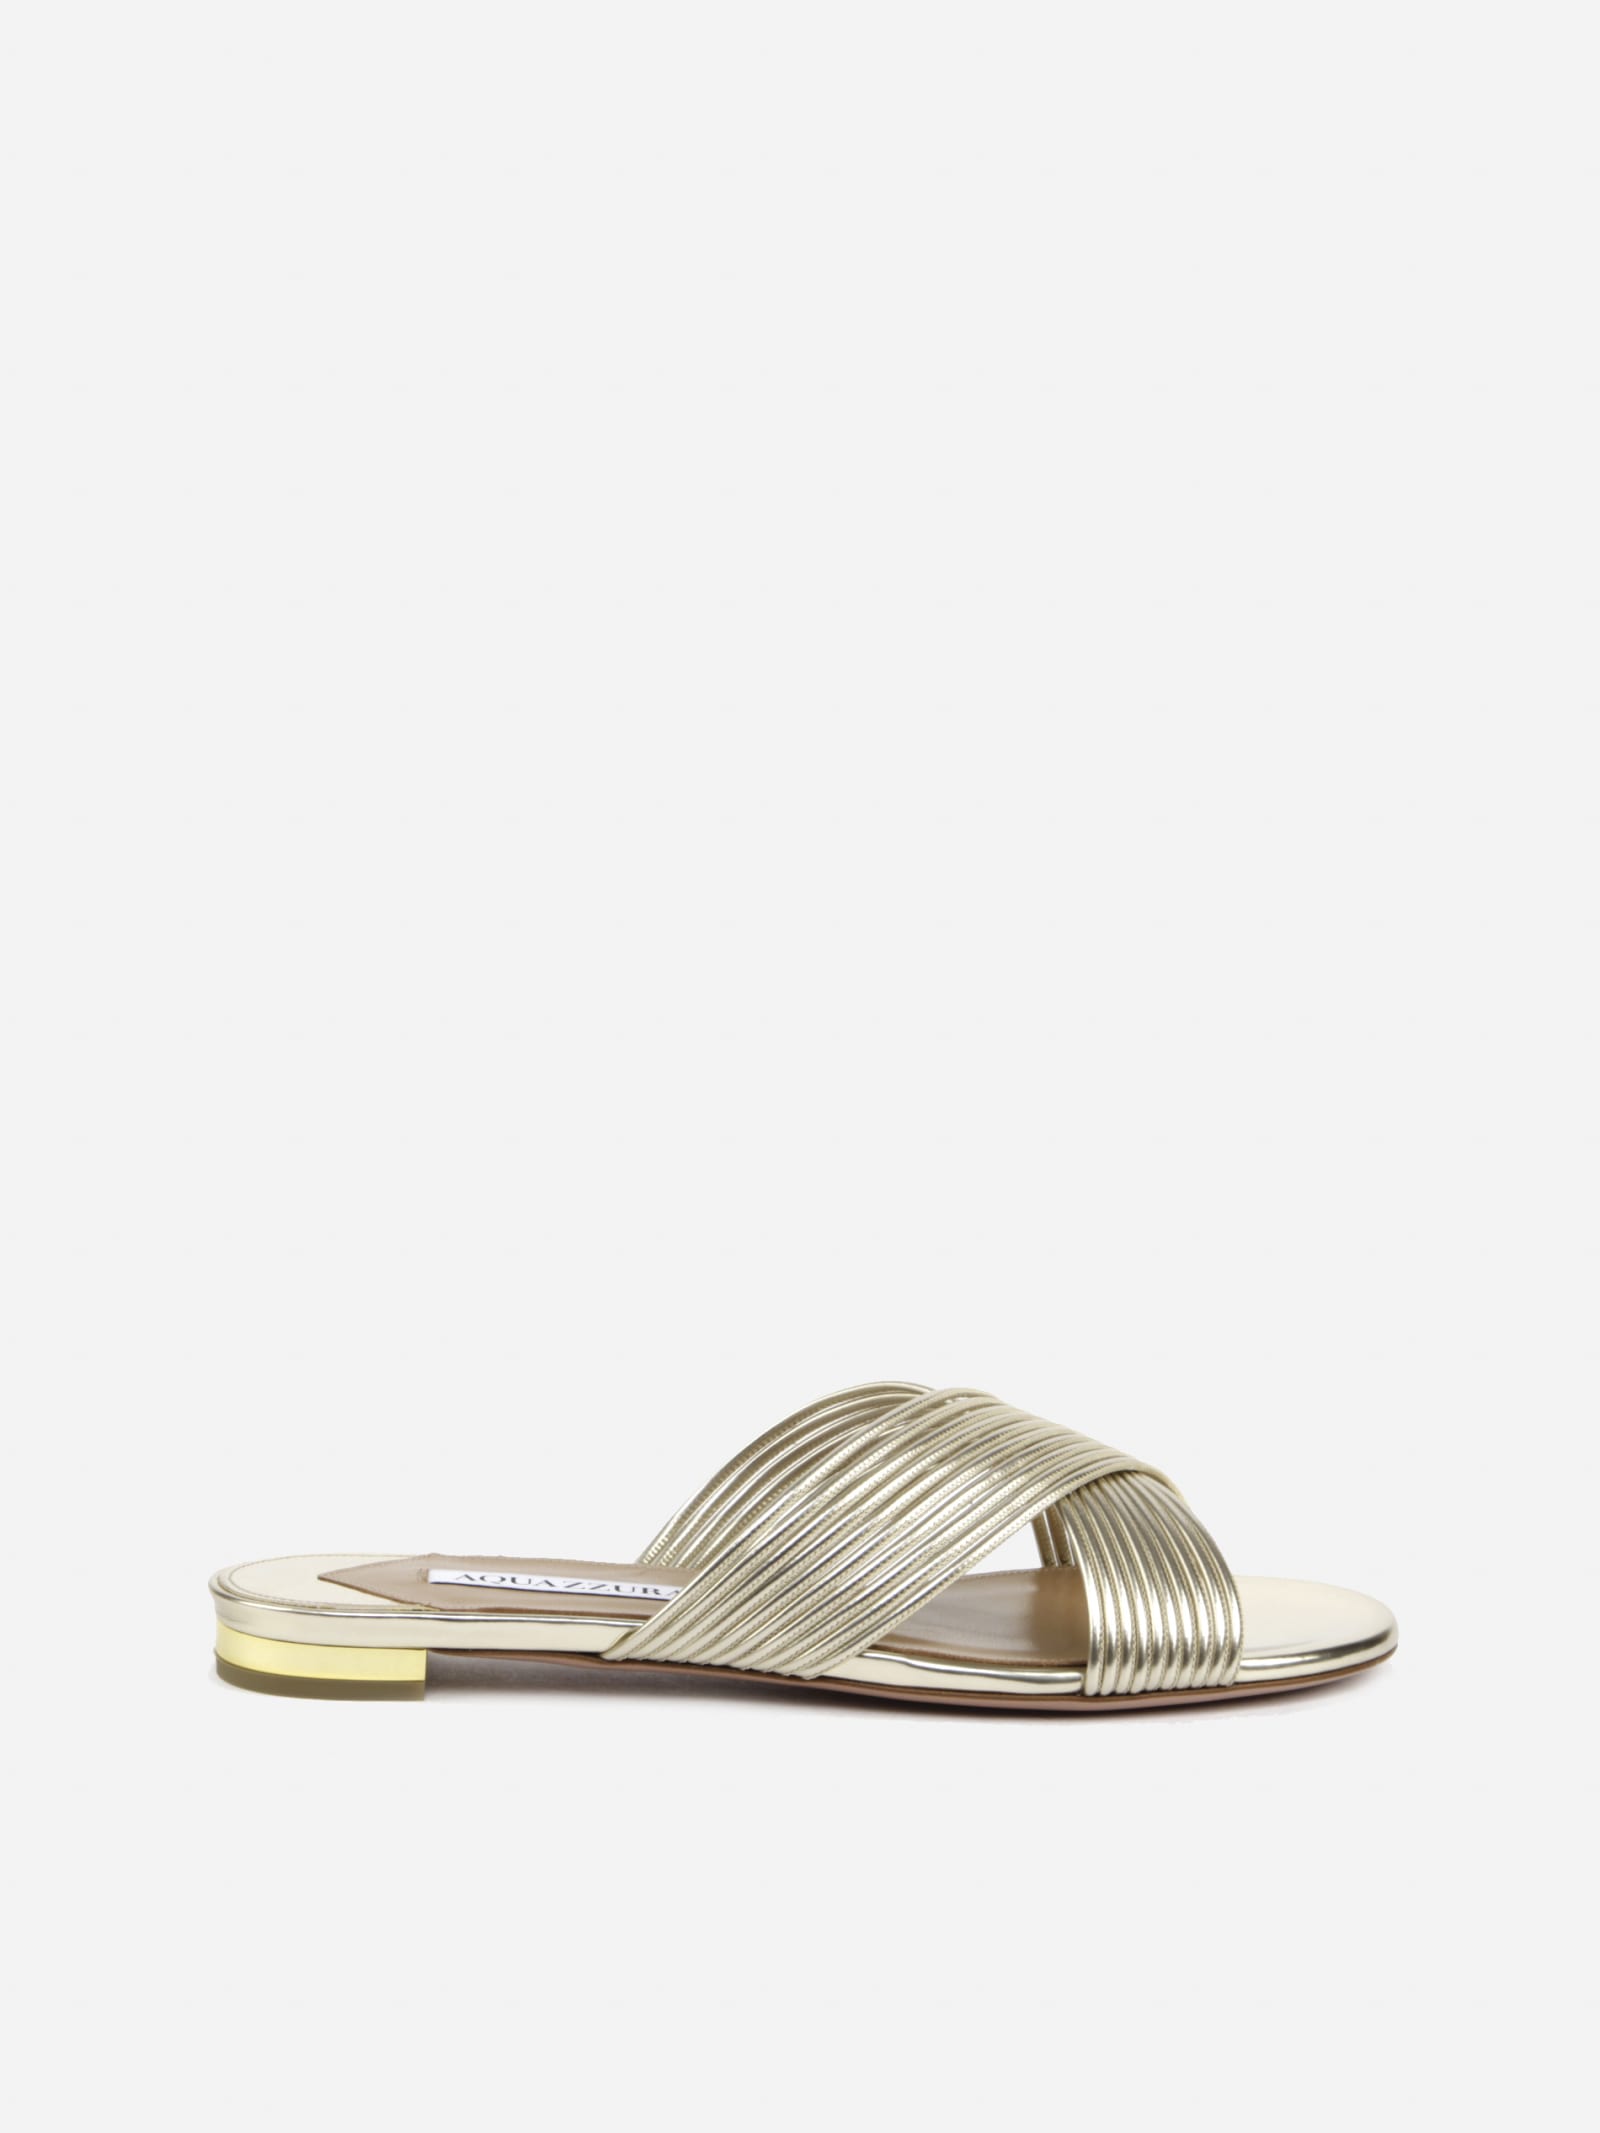 Aquazzura Perugia Flat Sandals Made Of Mirror Effect Leather In Platinum